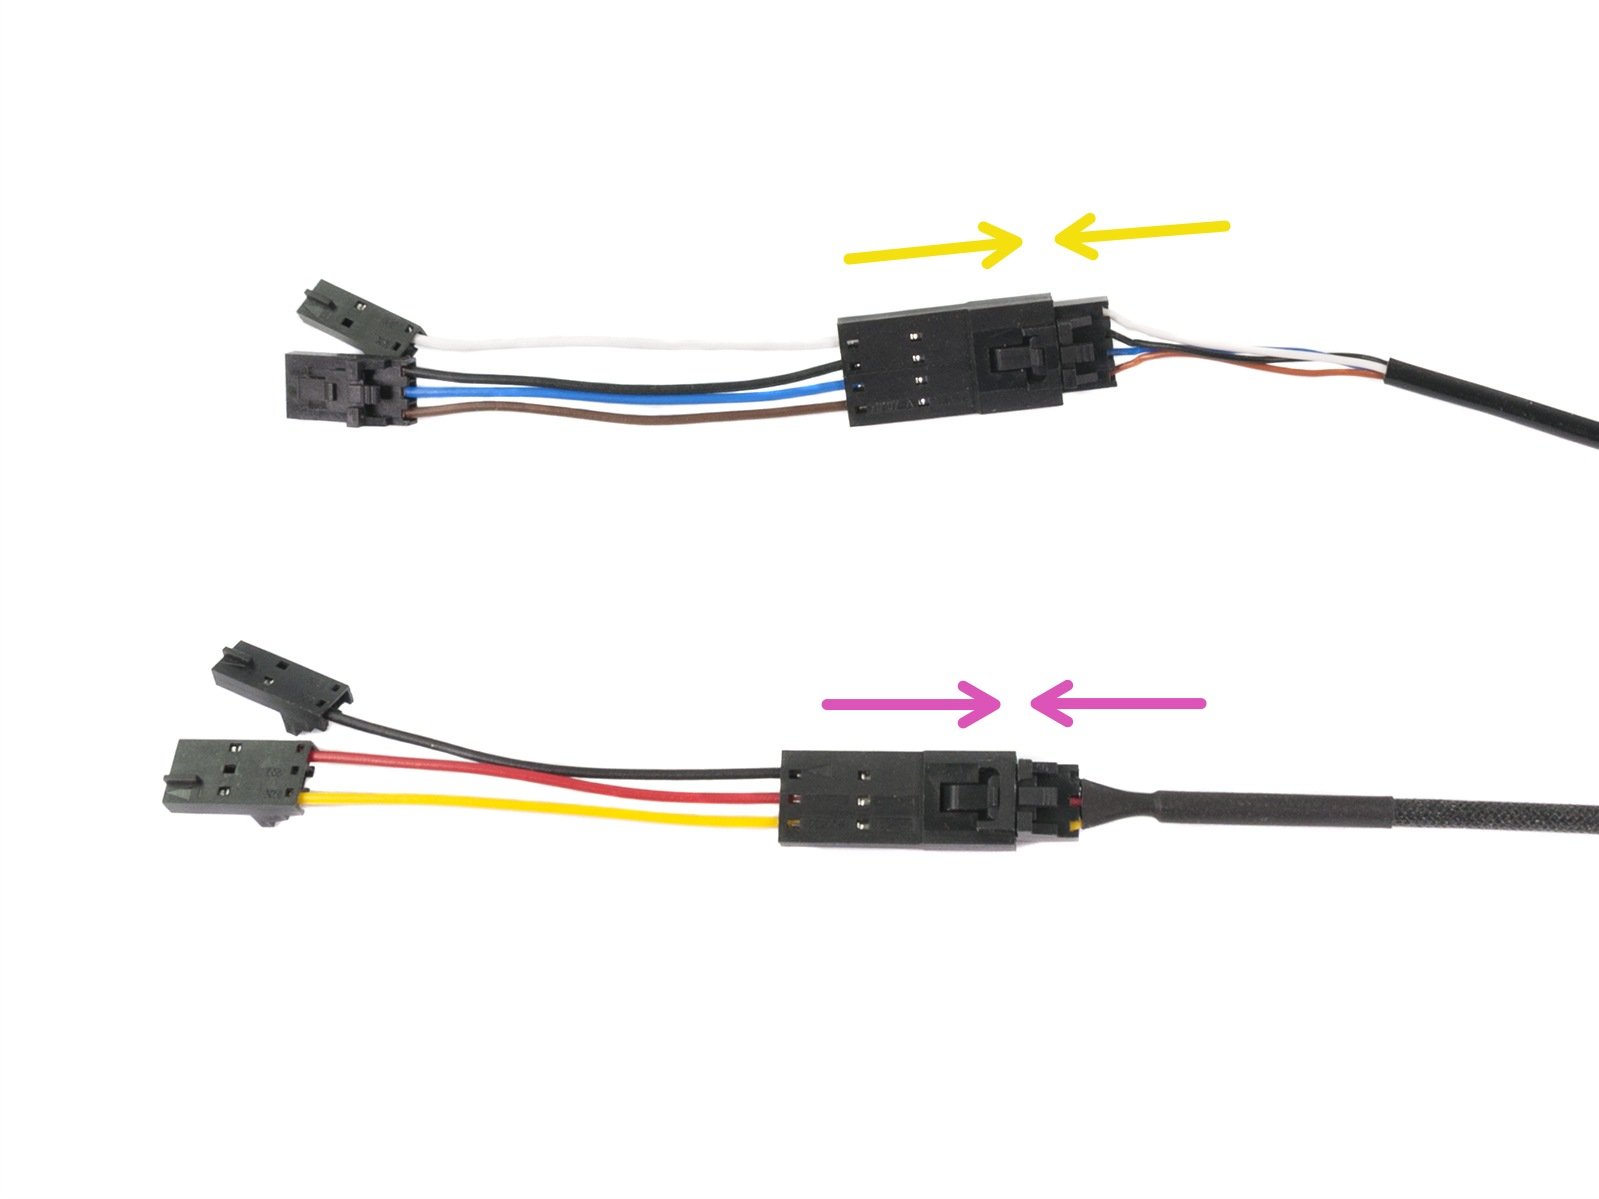 Conectando los v-cables a los cables del Extrusor